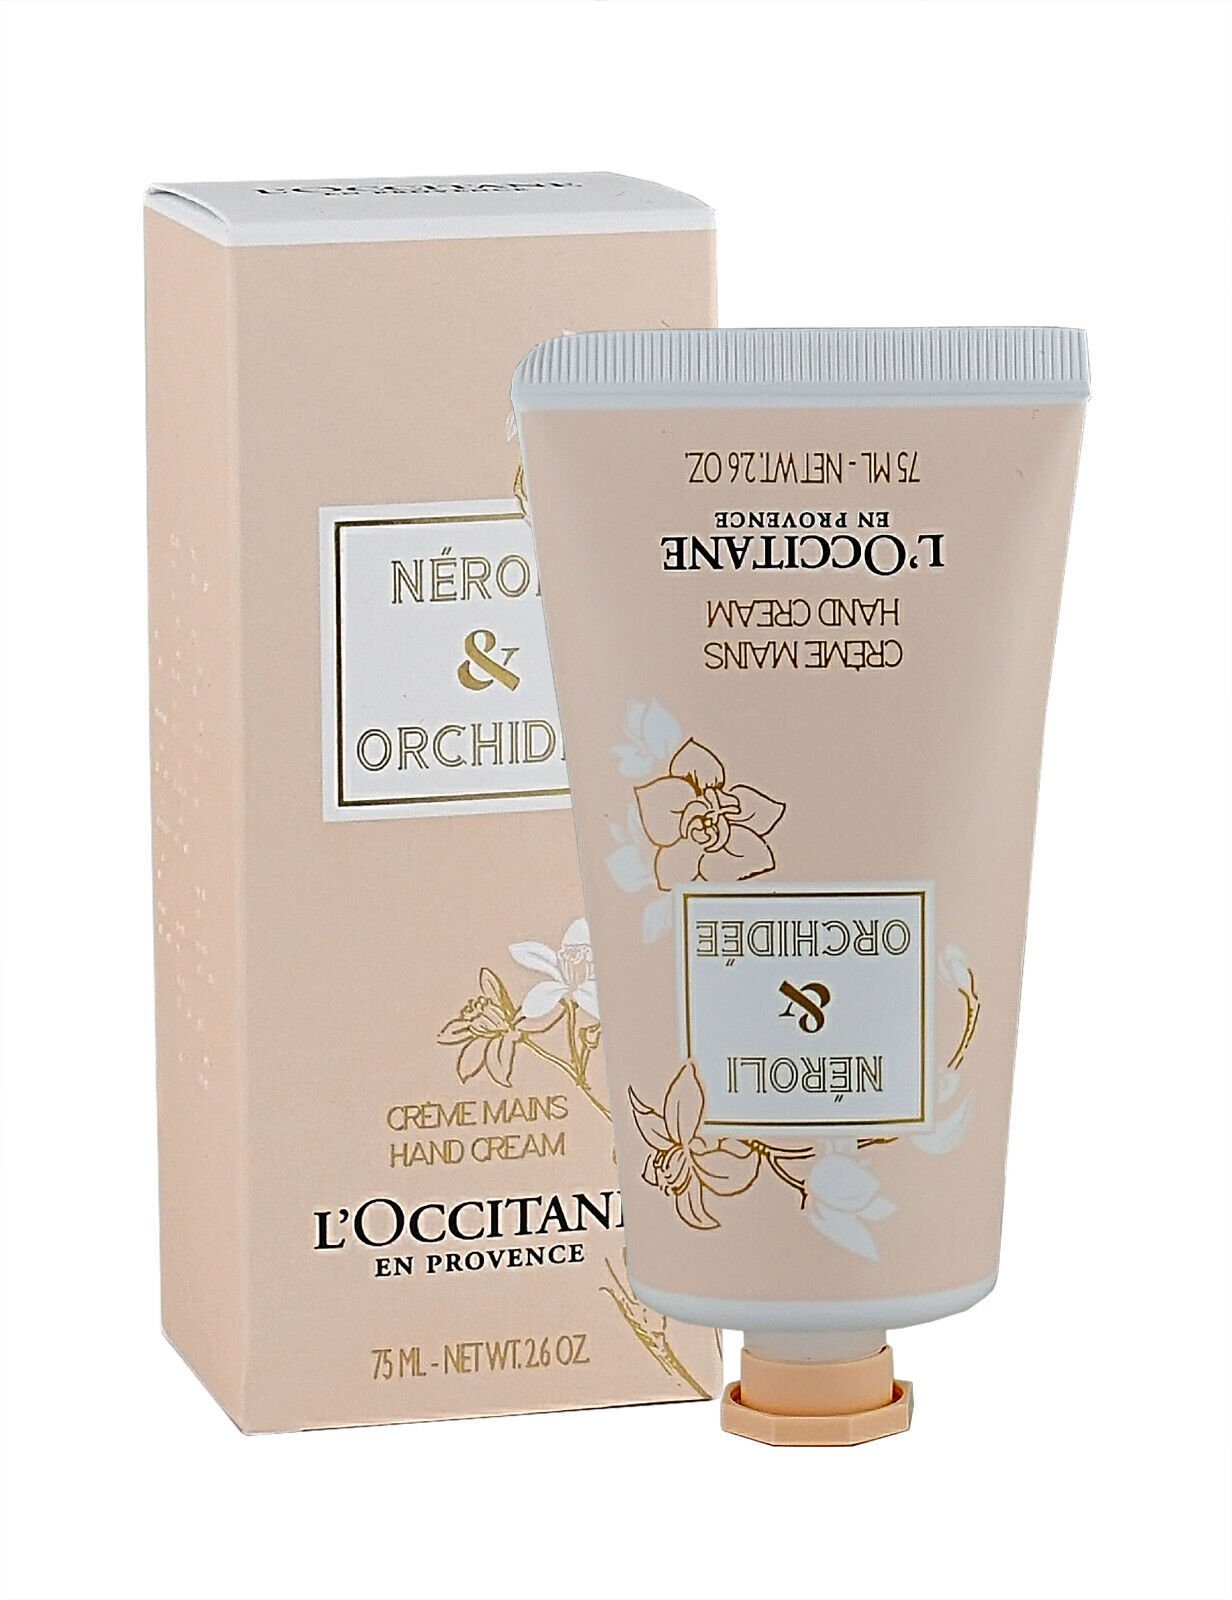 L'OCCITANE Handcreme L'occitane En Provence Neroli & Orchidee Hand Cream 75ml